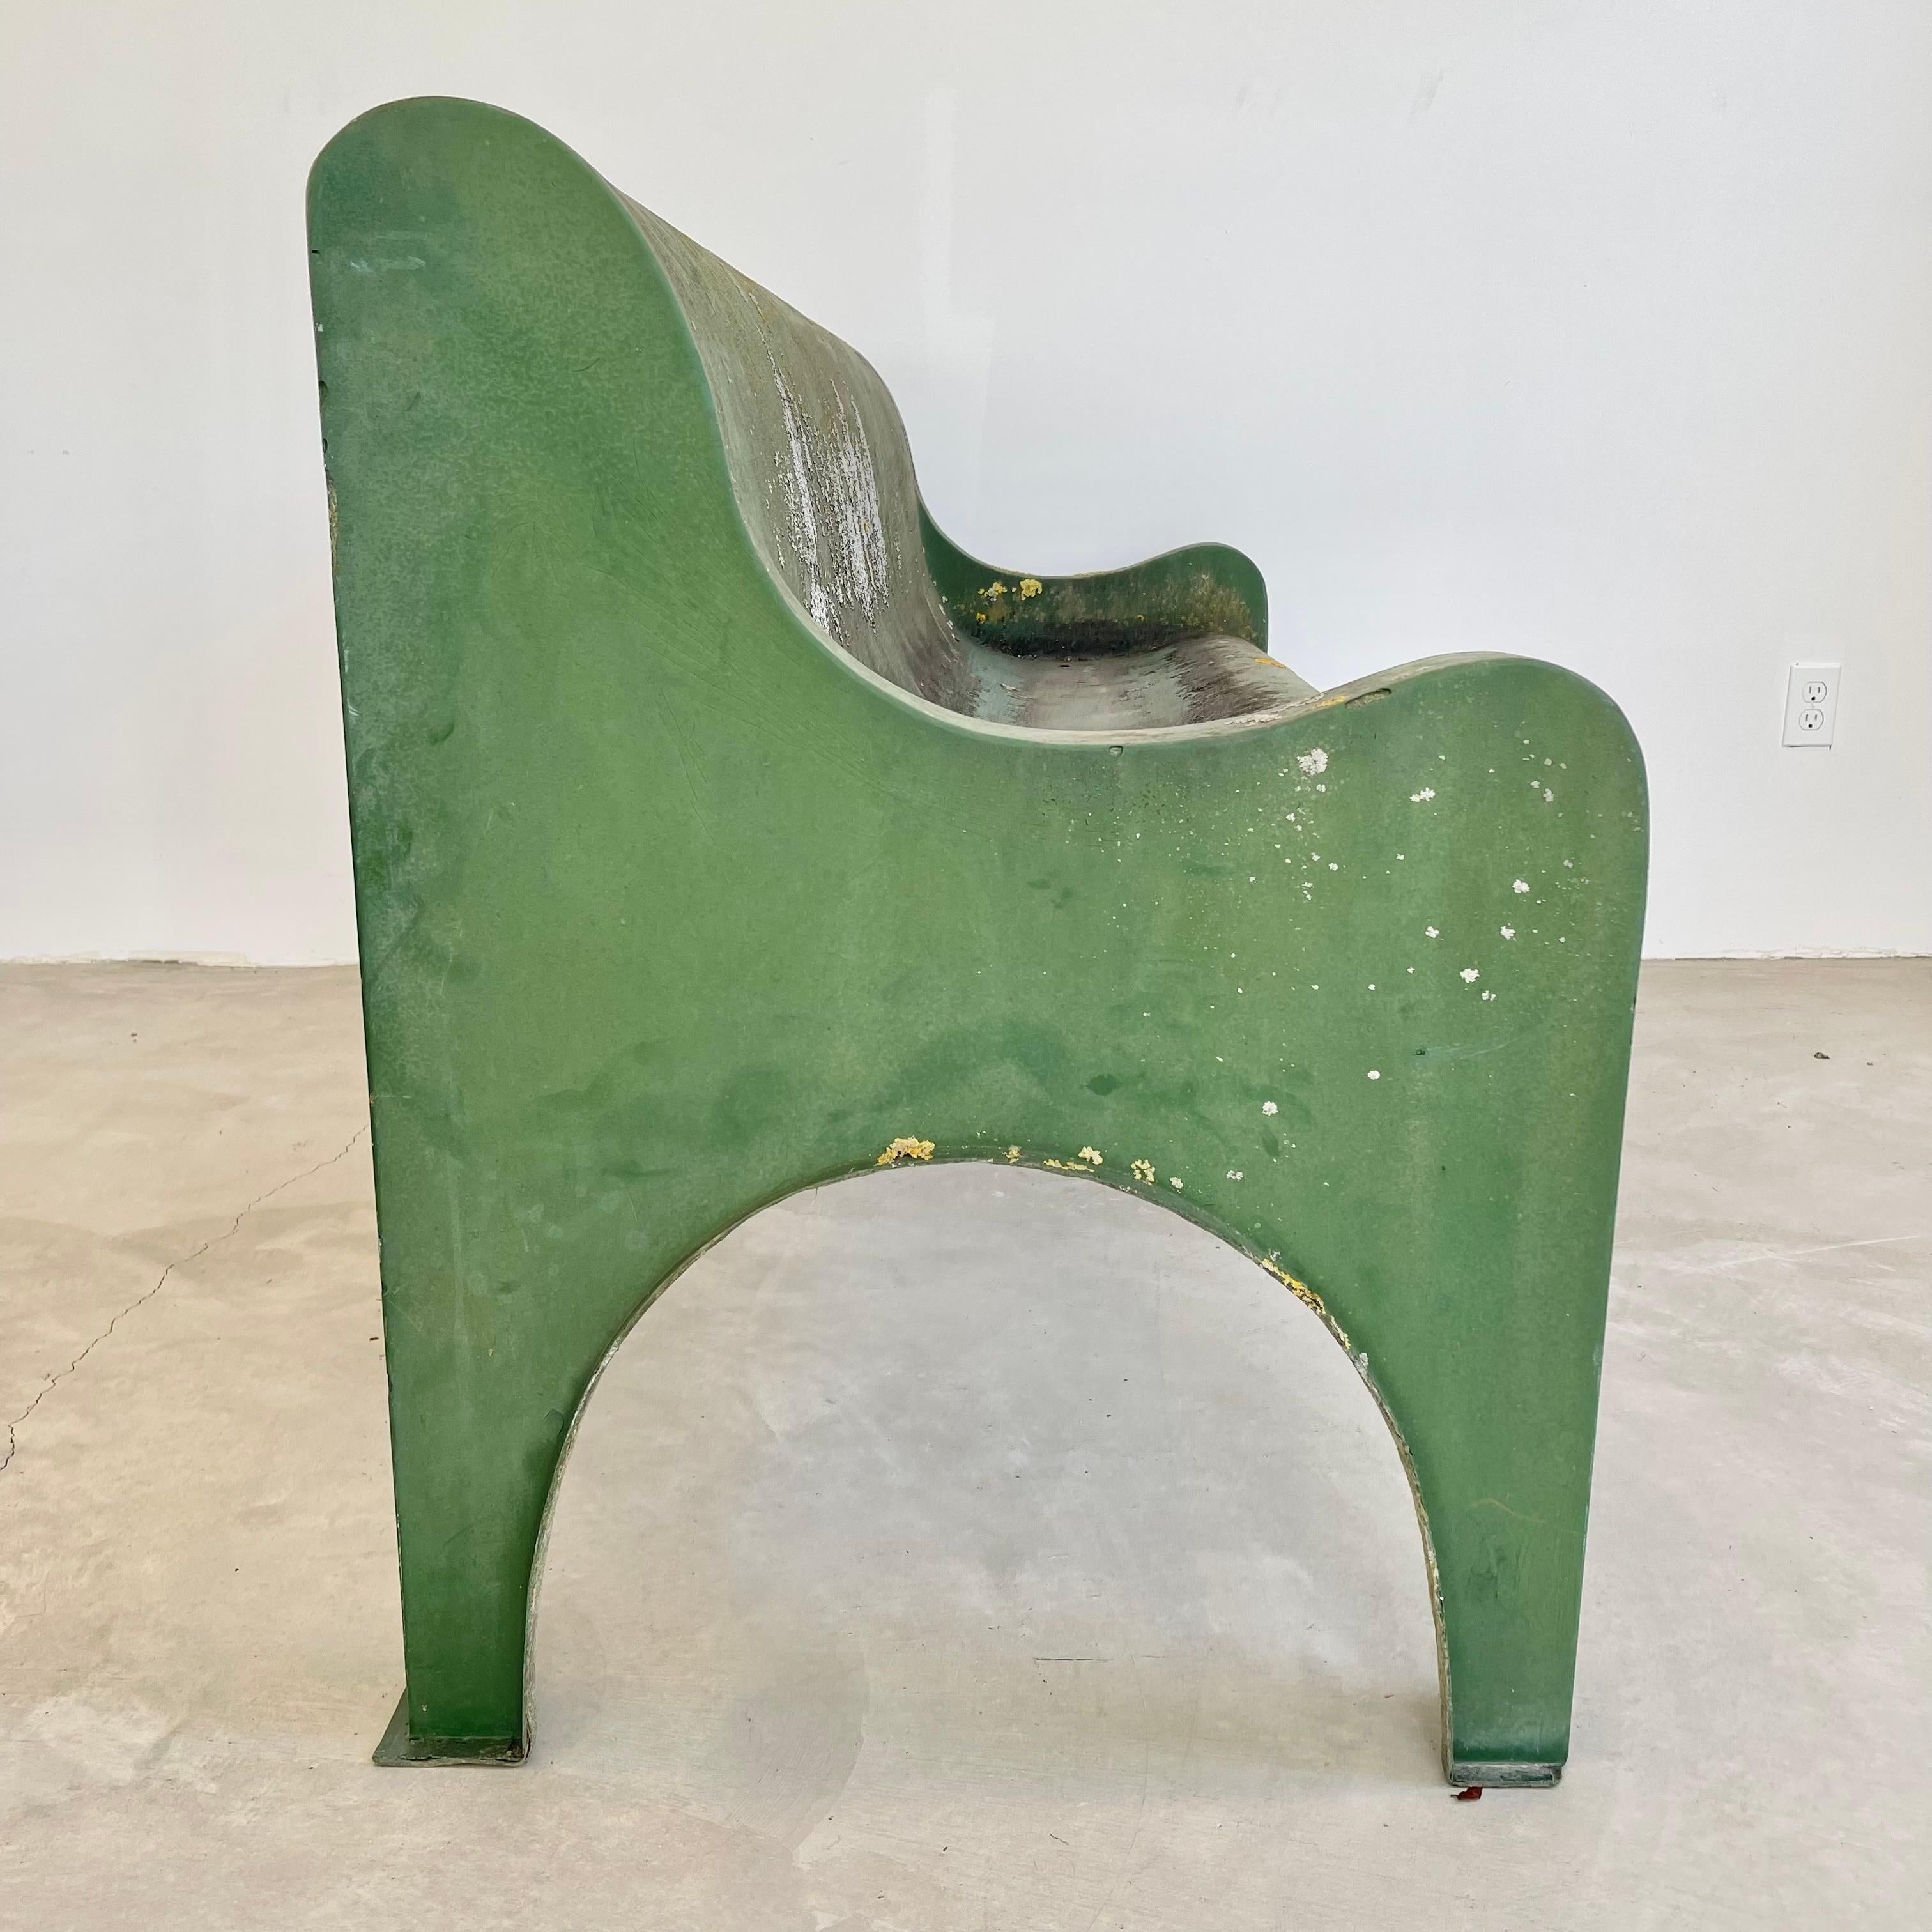 Minimalist Green Sculptural Fiberglass Bench, 1960s Belgium